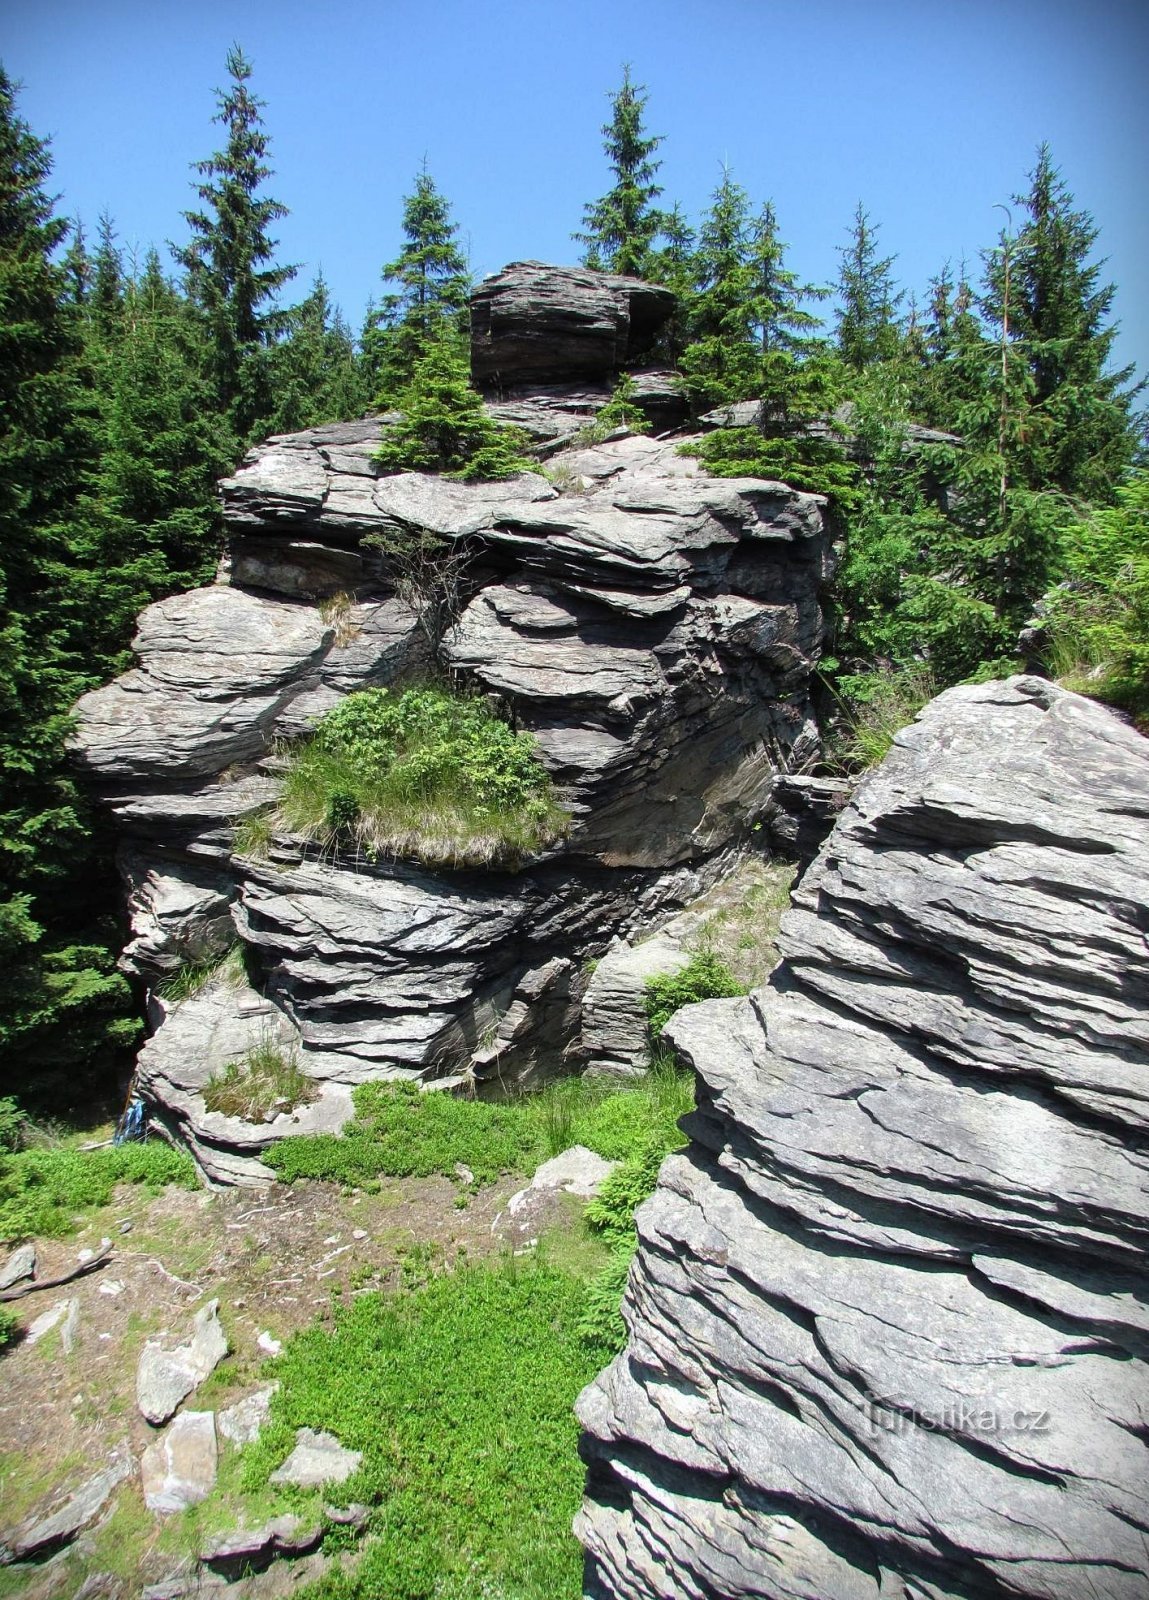 Ze świata niezwykłych skał Hrubé Jeseník - część 3